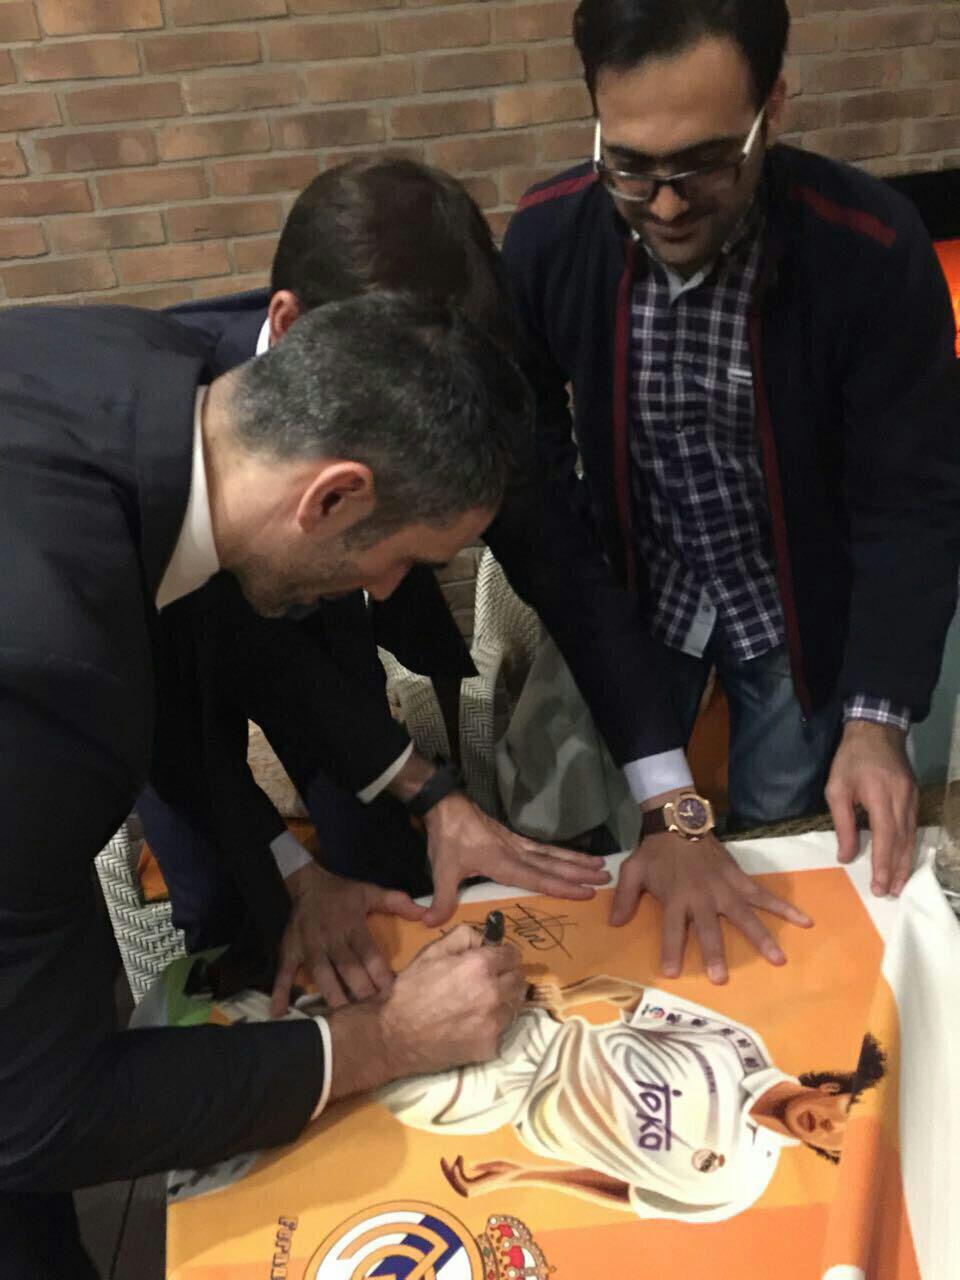 نقاشی امضاشده فیگو در خانه فرهنگ گویا + تصاویر